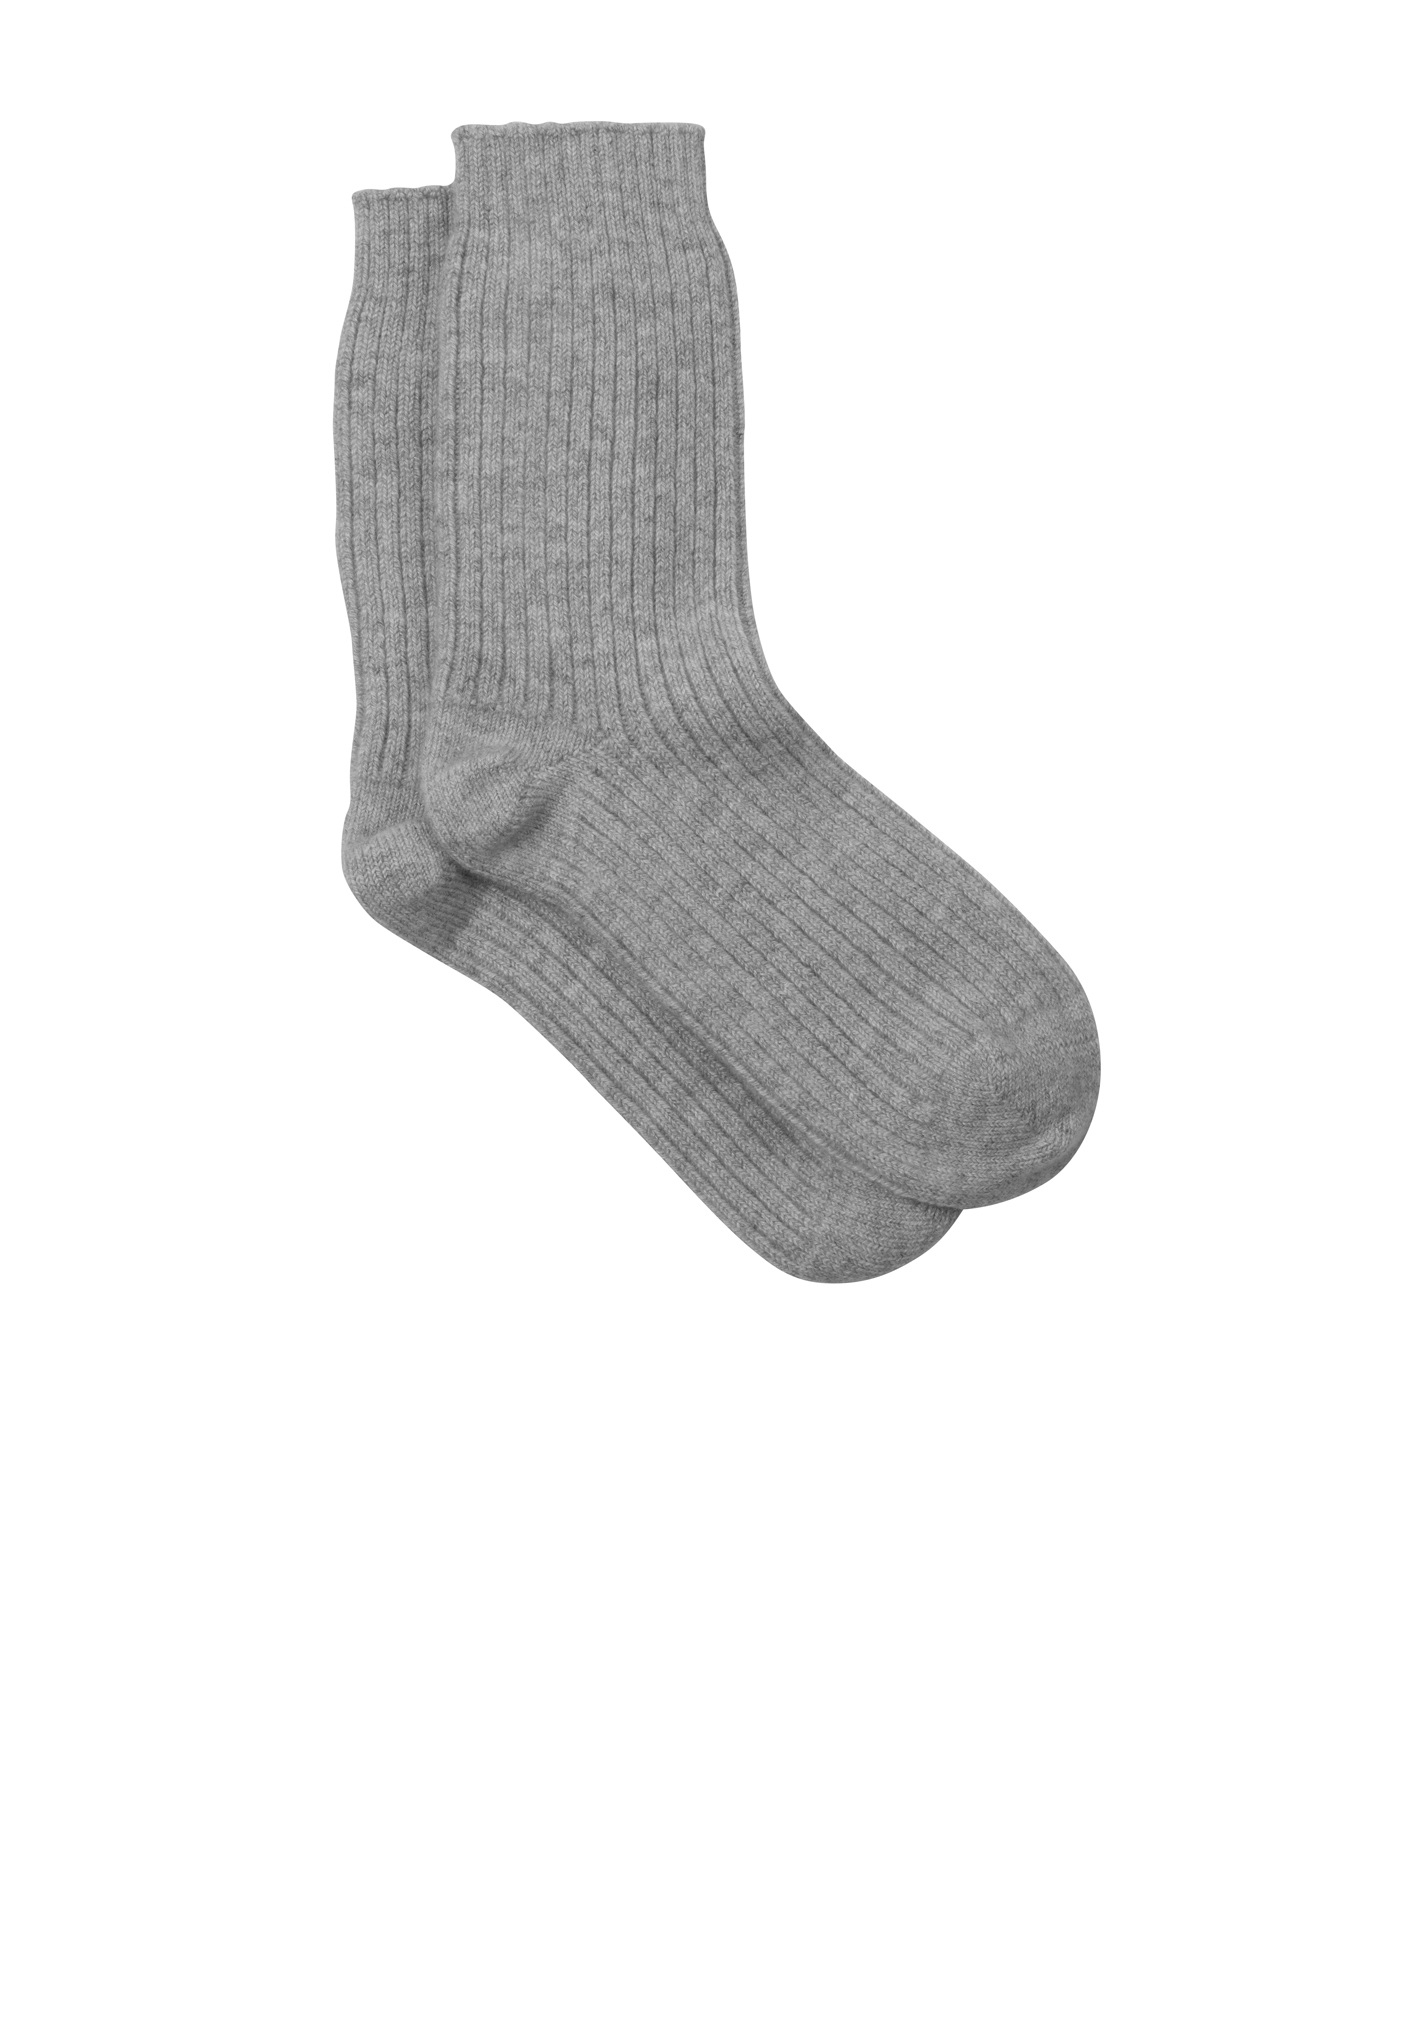 cashmere socks image hxquozv